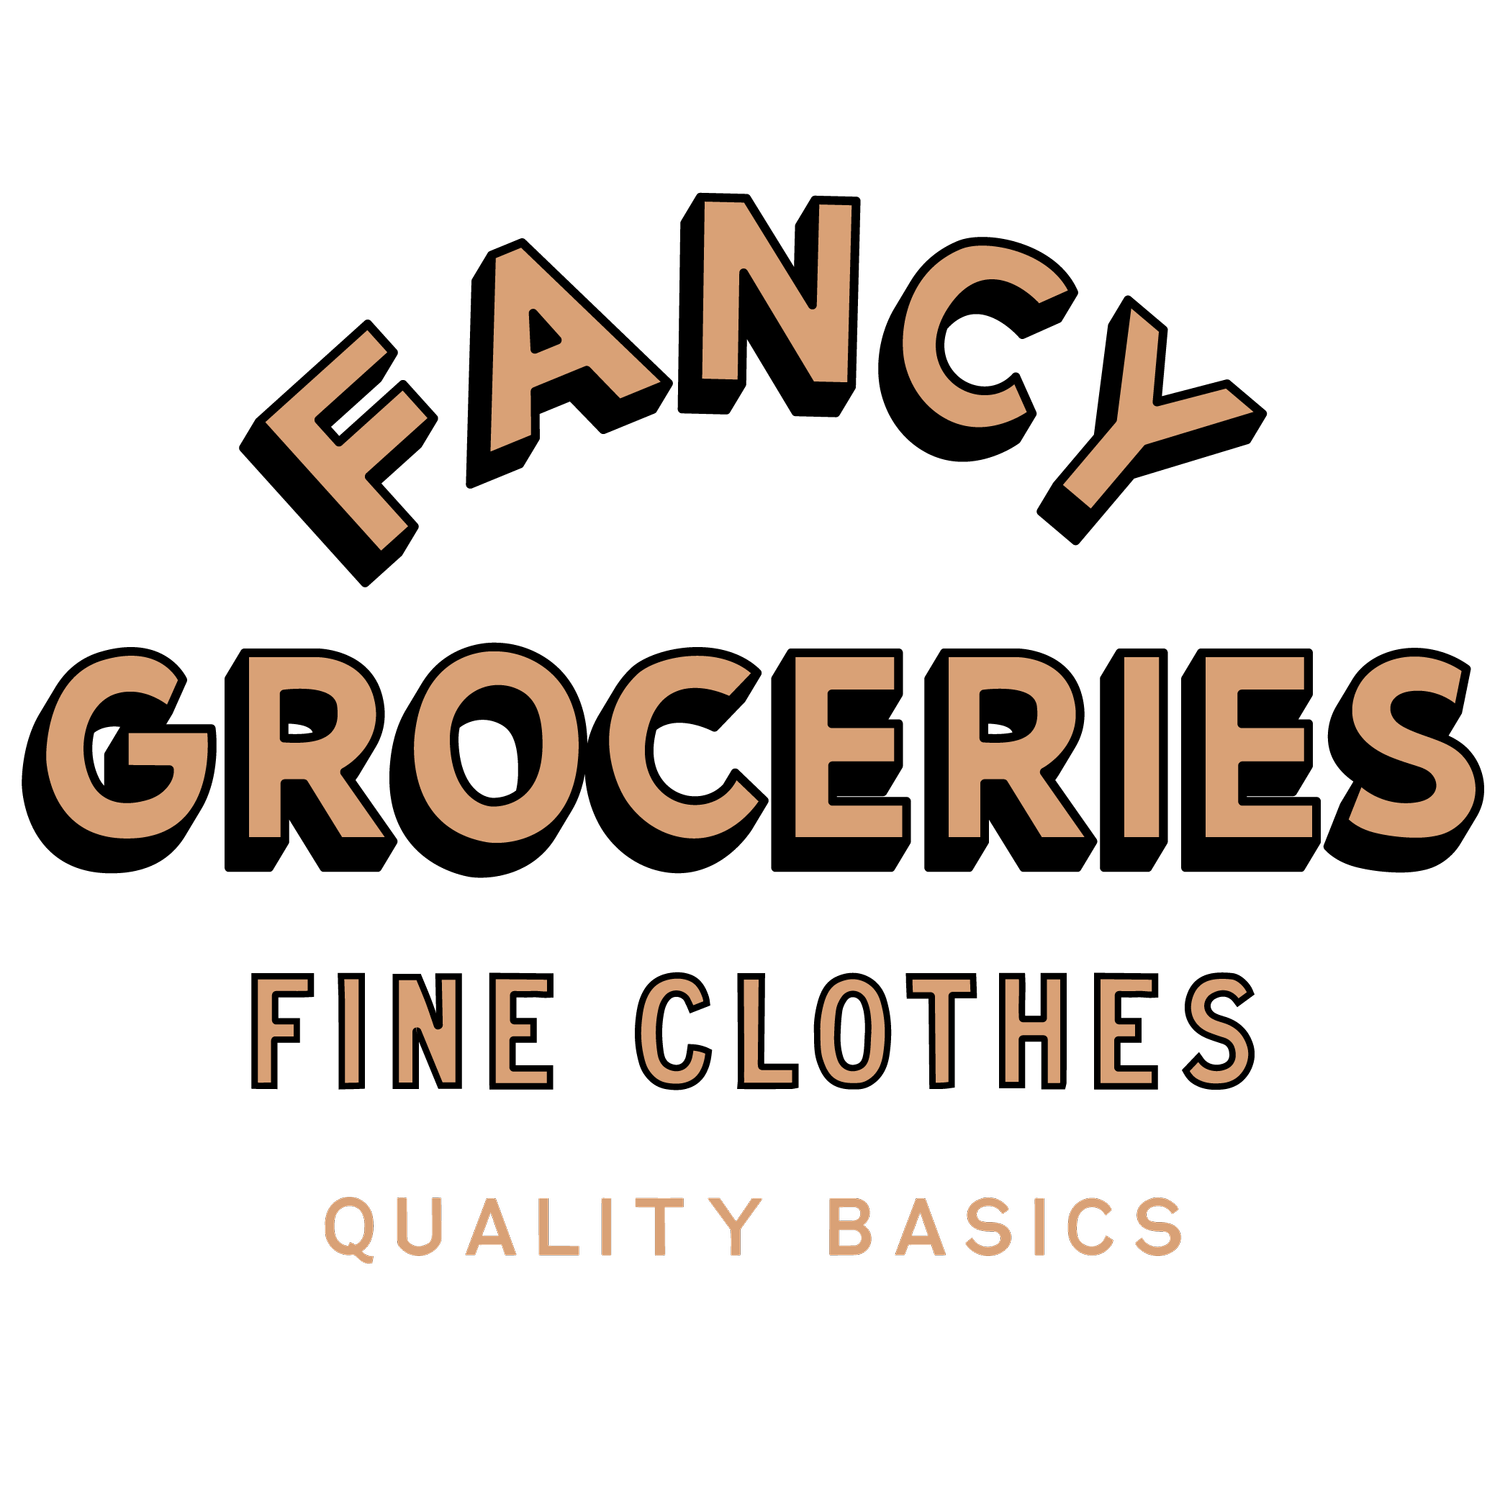 Fancy Groceries